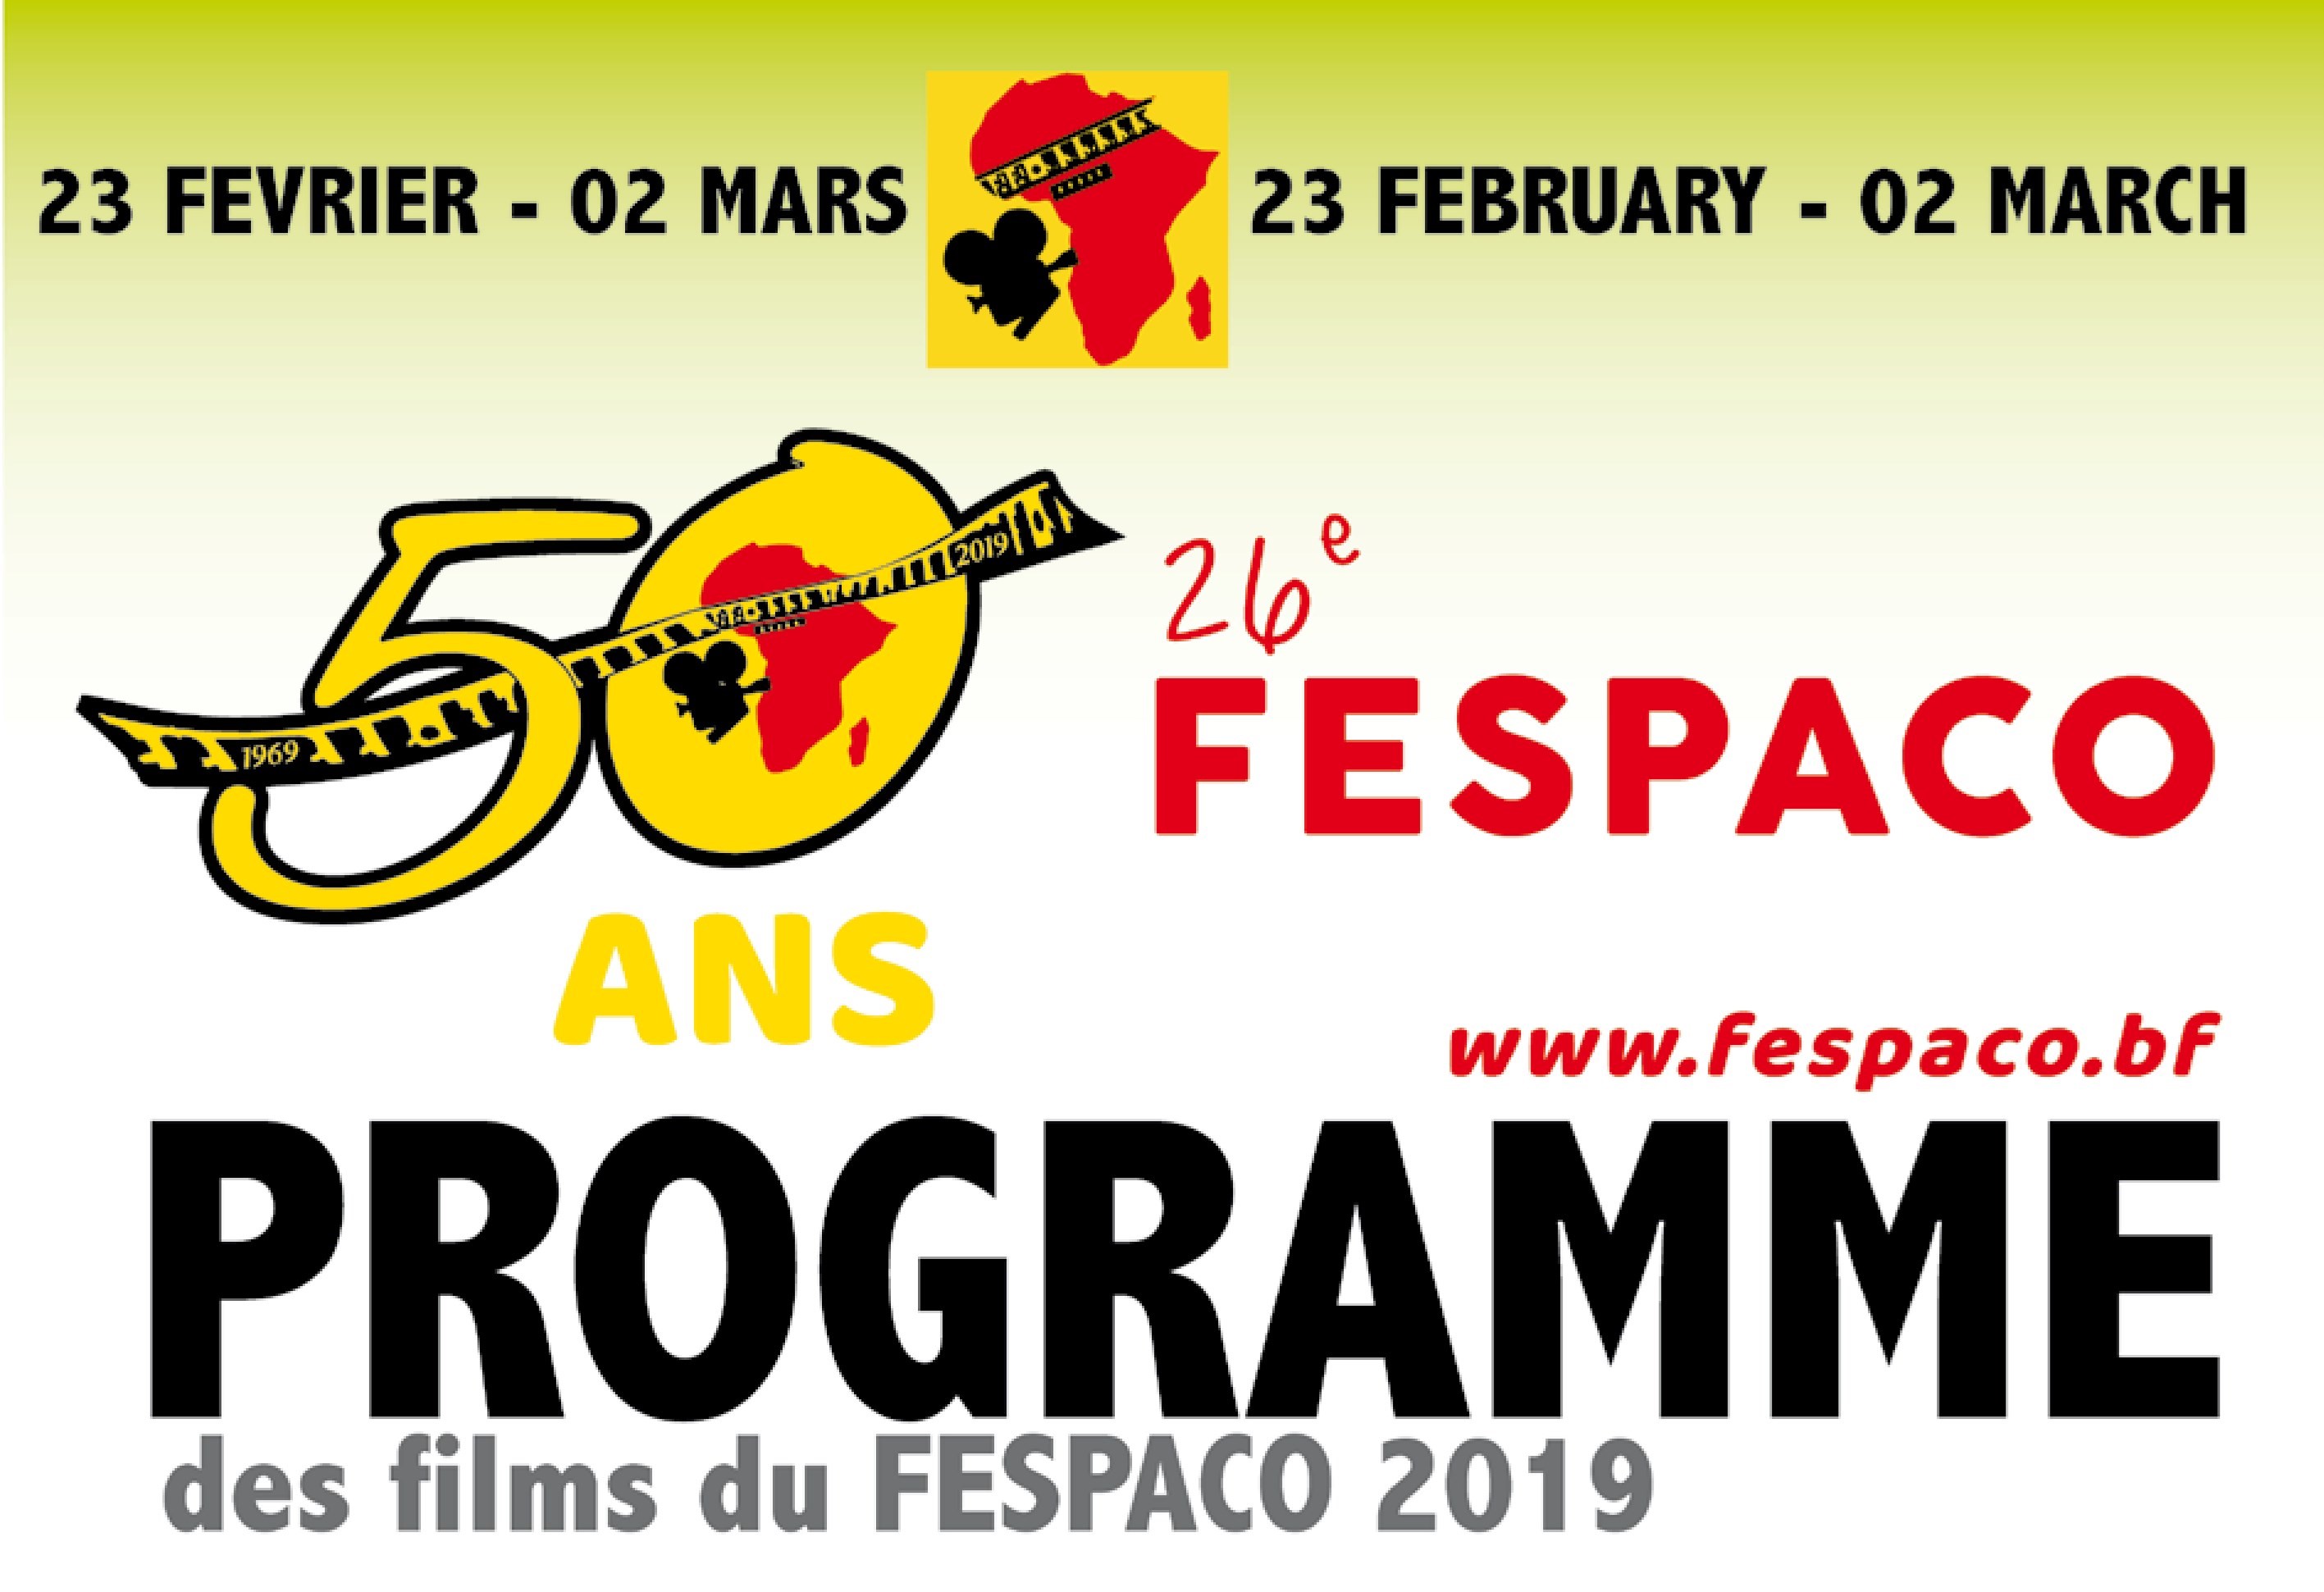 Fespaco 2019 : Programme de projection des films du dimanche 24 février 2019